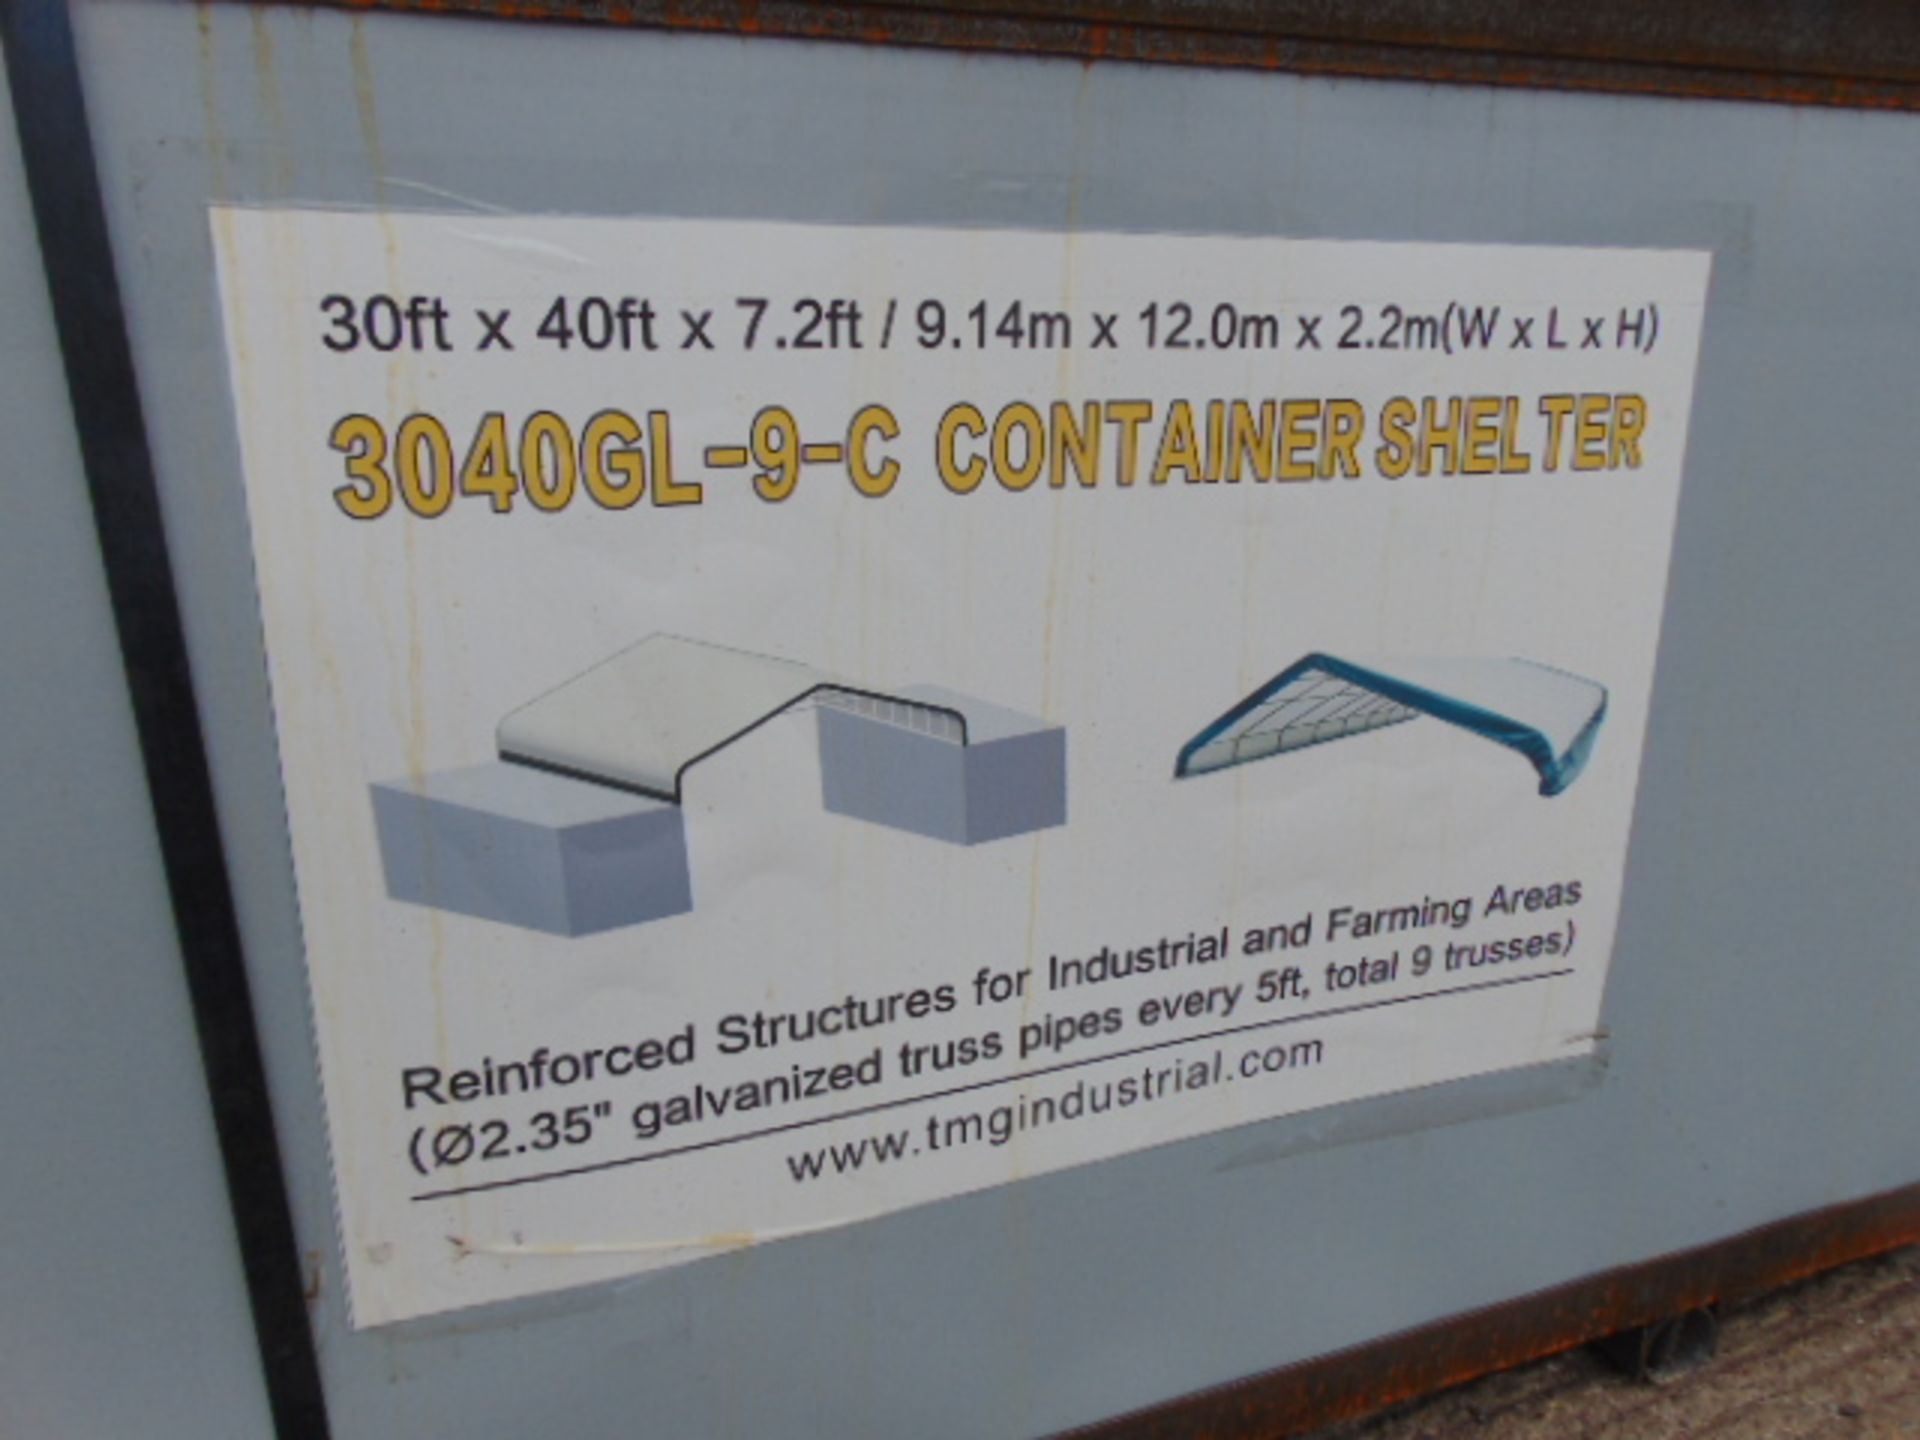 Container Shelter 30'W x 40'L x 7.2' H P/No 3040GL-9-C - Bild 5 aus 6